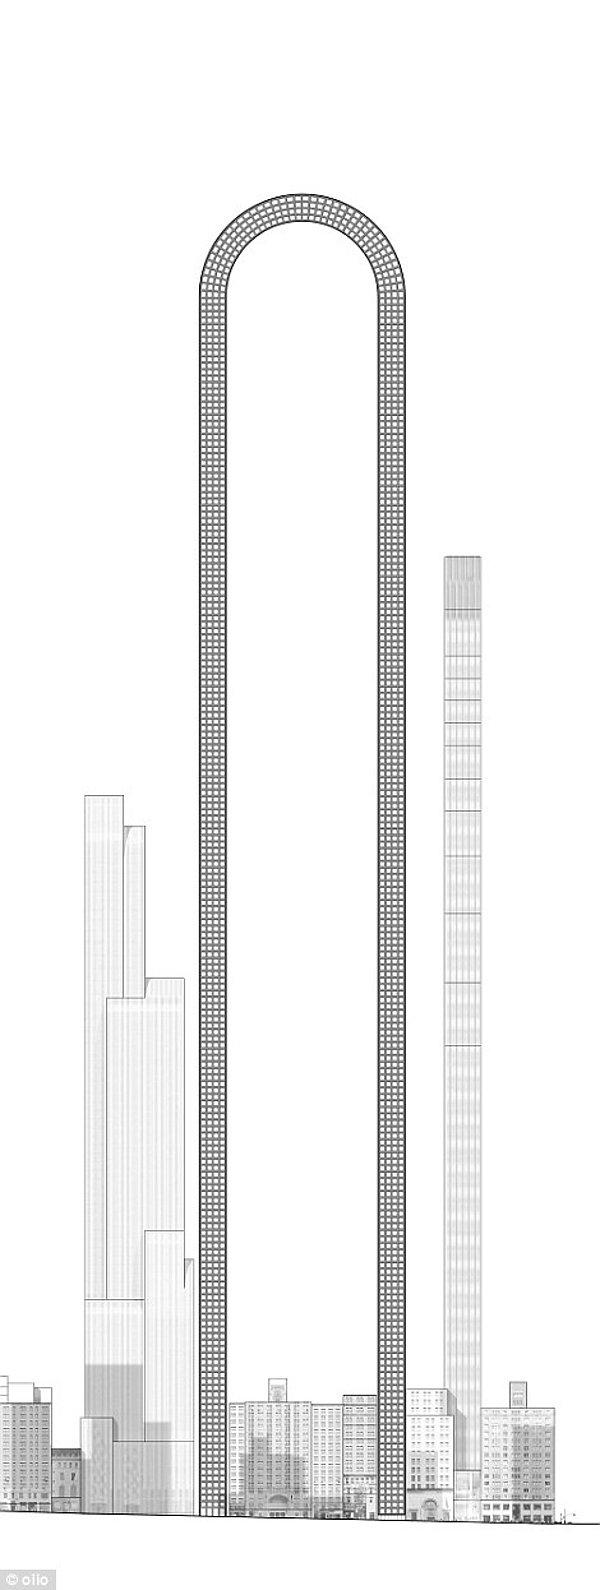 9. "The Big Bend, Manhattan'ın yükseklik sınırlamaları için mütevazı bir mimari çözüm olabilir. Artık yapılarımızda gökyüzünün sınırları hakkında endişeler üretmeden onları ön plana çıkaracak tasarımlarla yenilikler yapabiliriz."